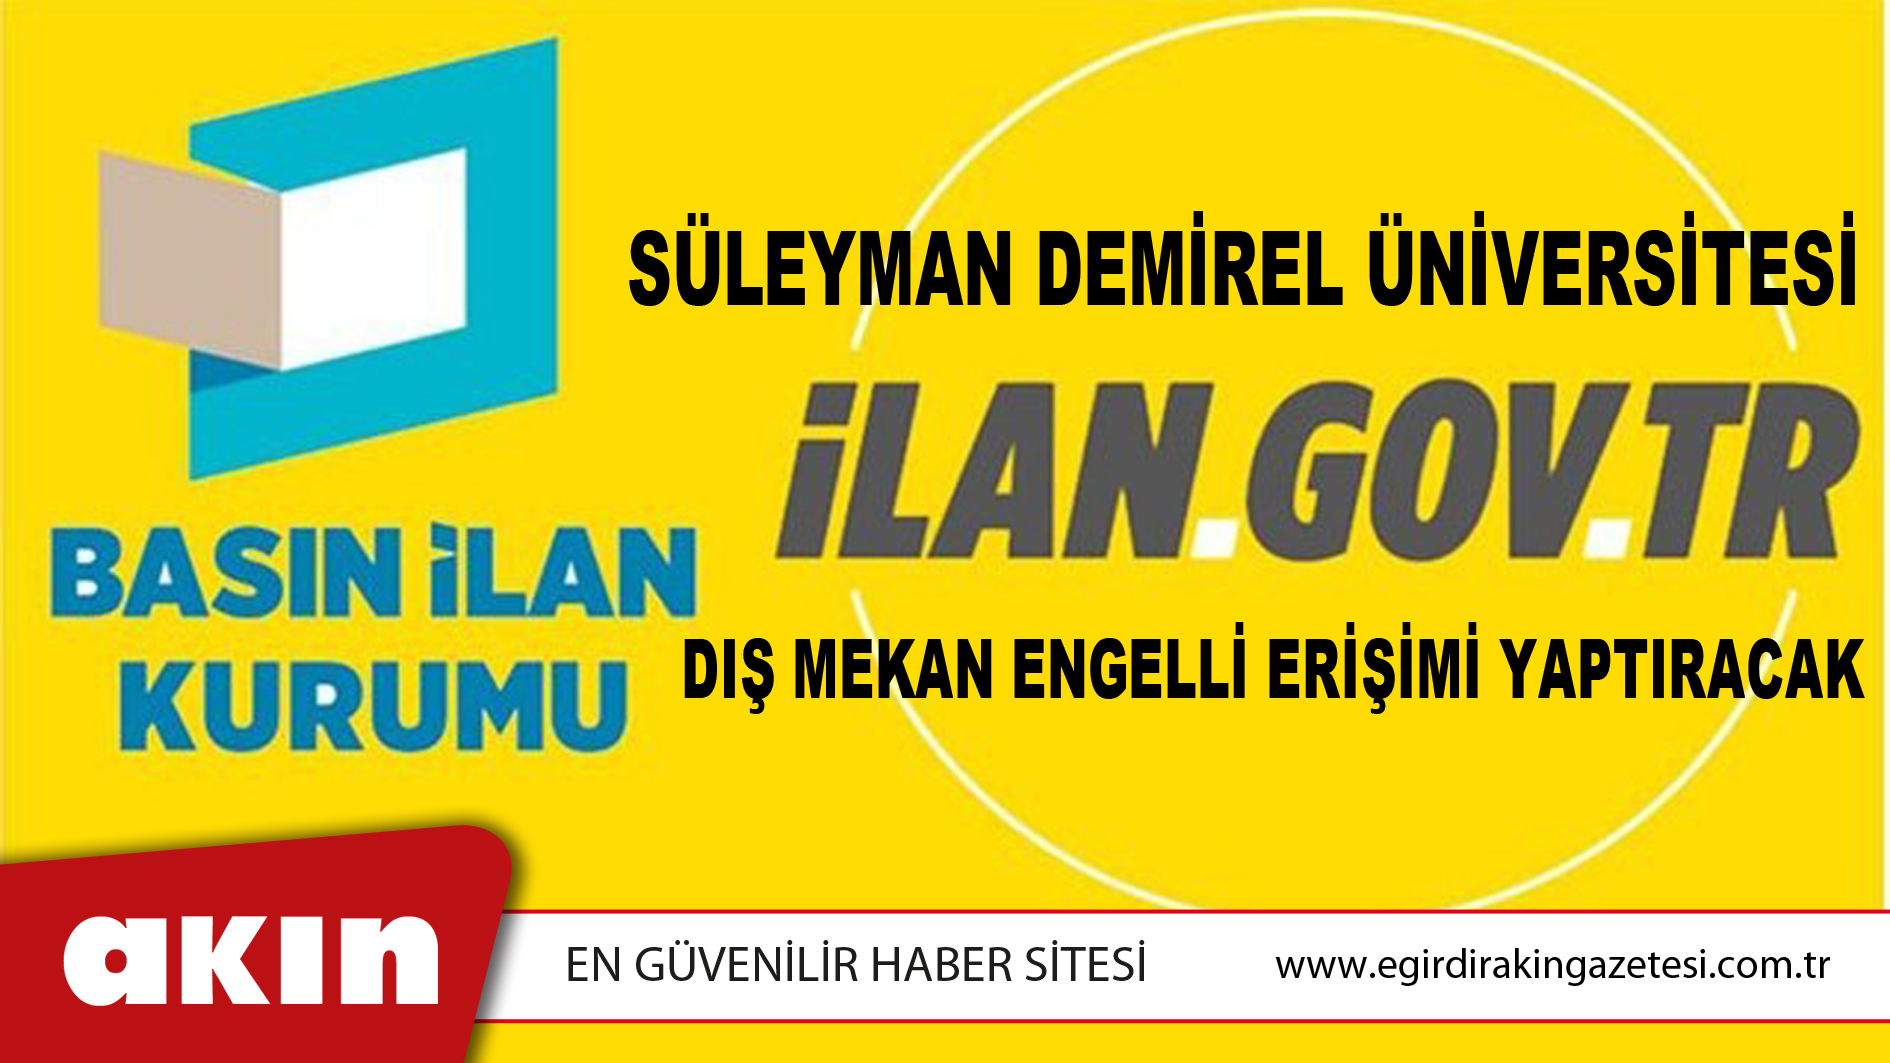 Süleyman Demirel Üniversitesi Dış Mekan Engelli Erişimi Yaptıracak